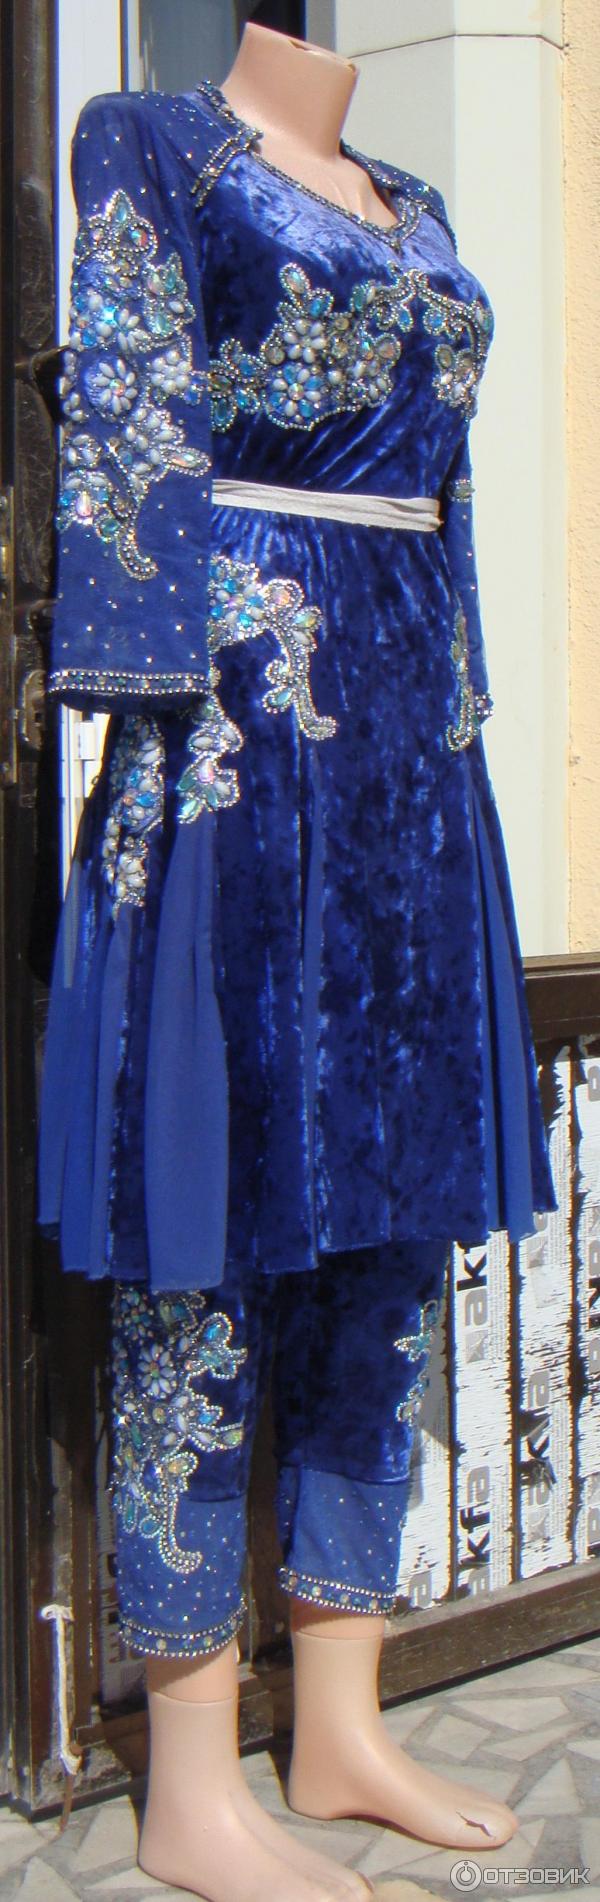 Узбекские платья со штанами